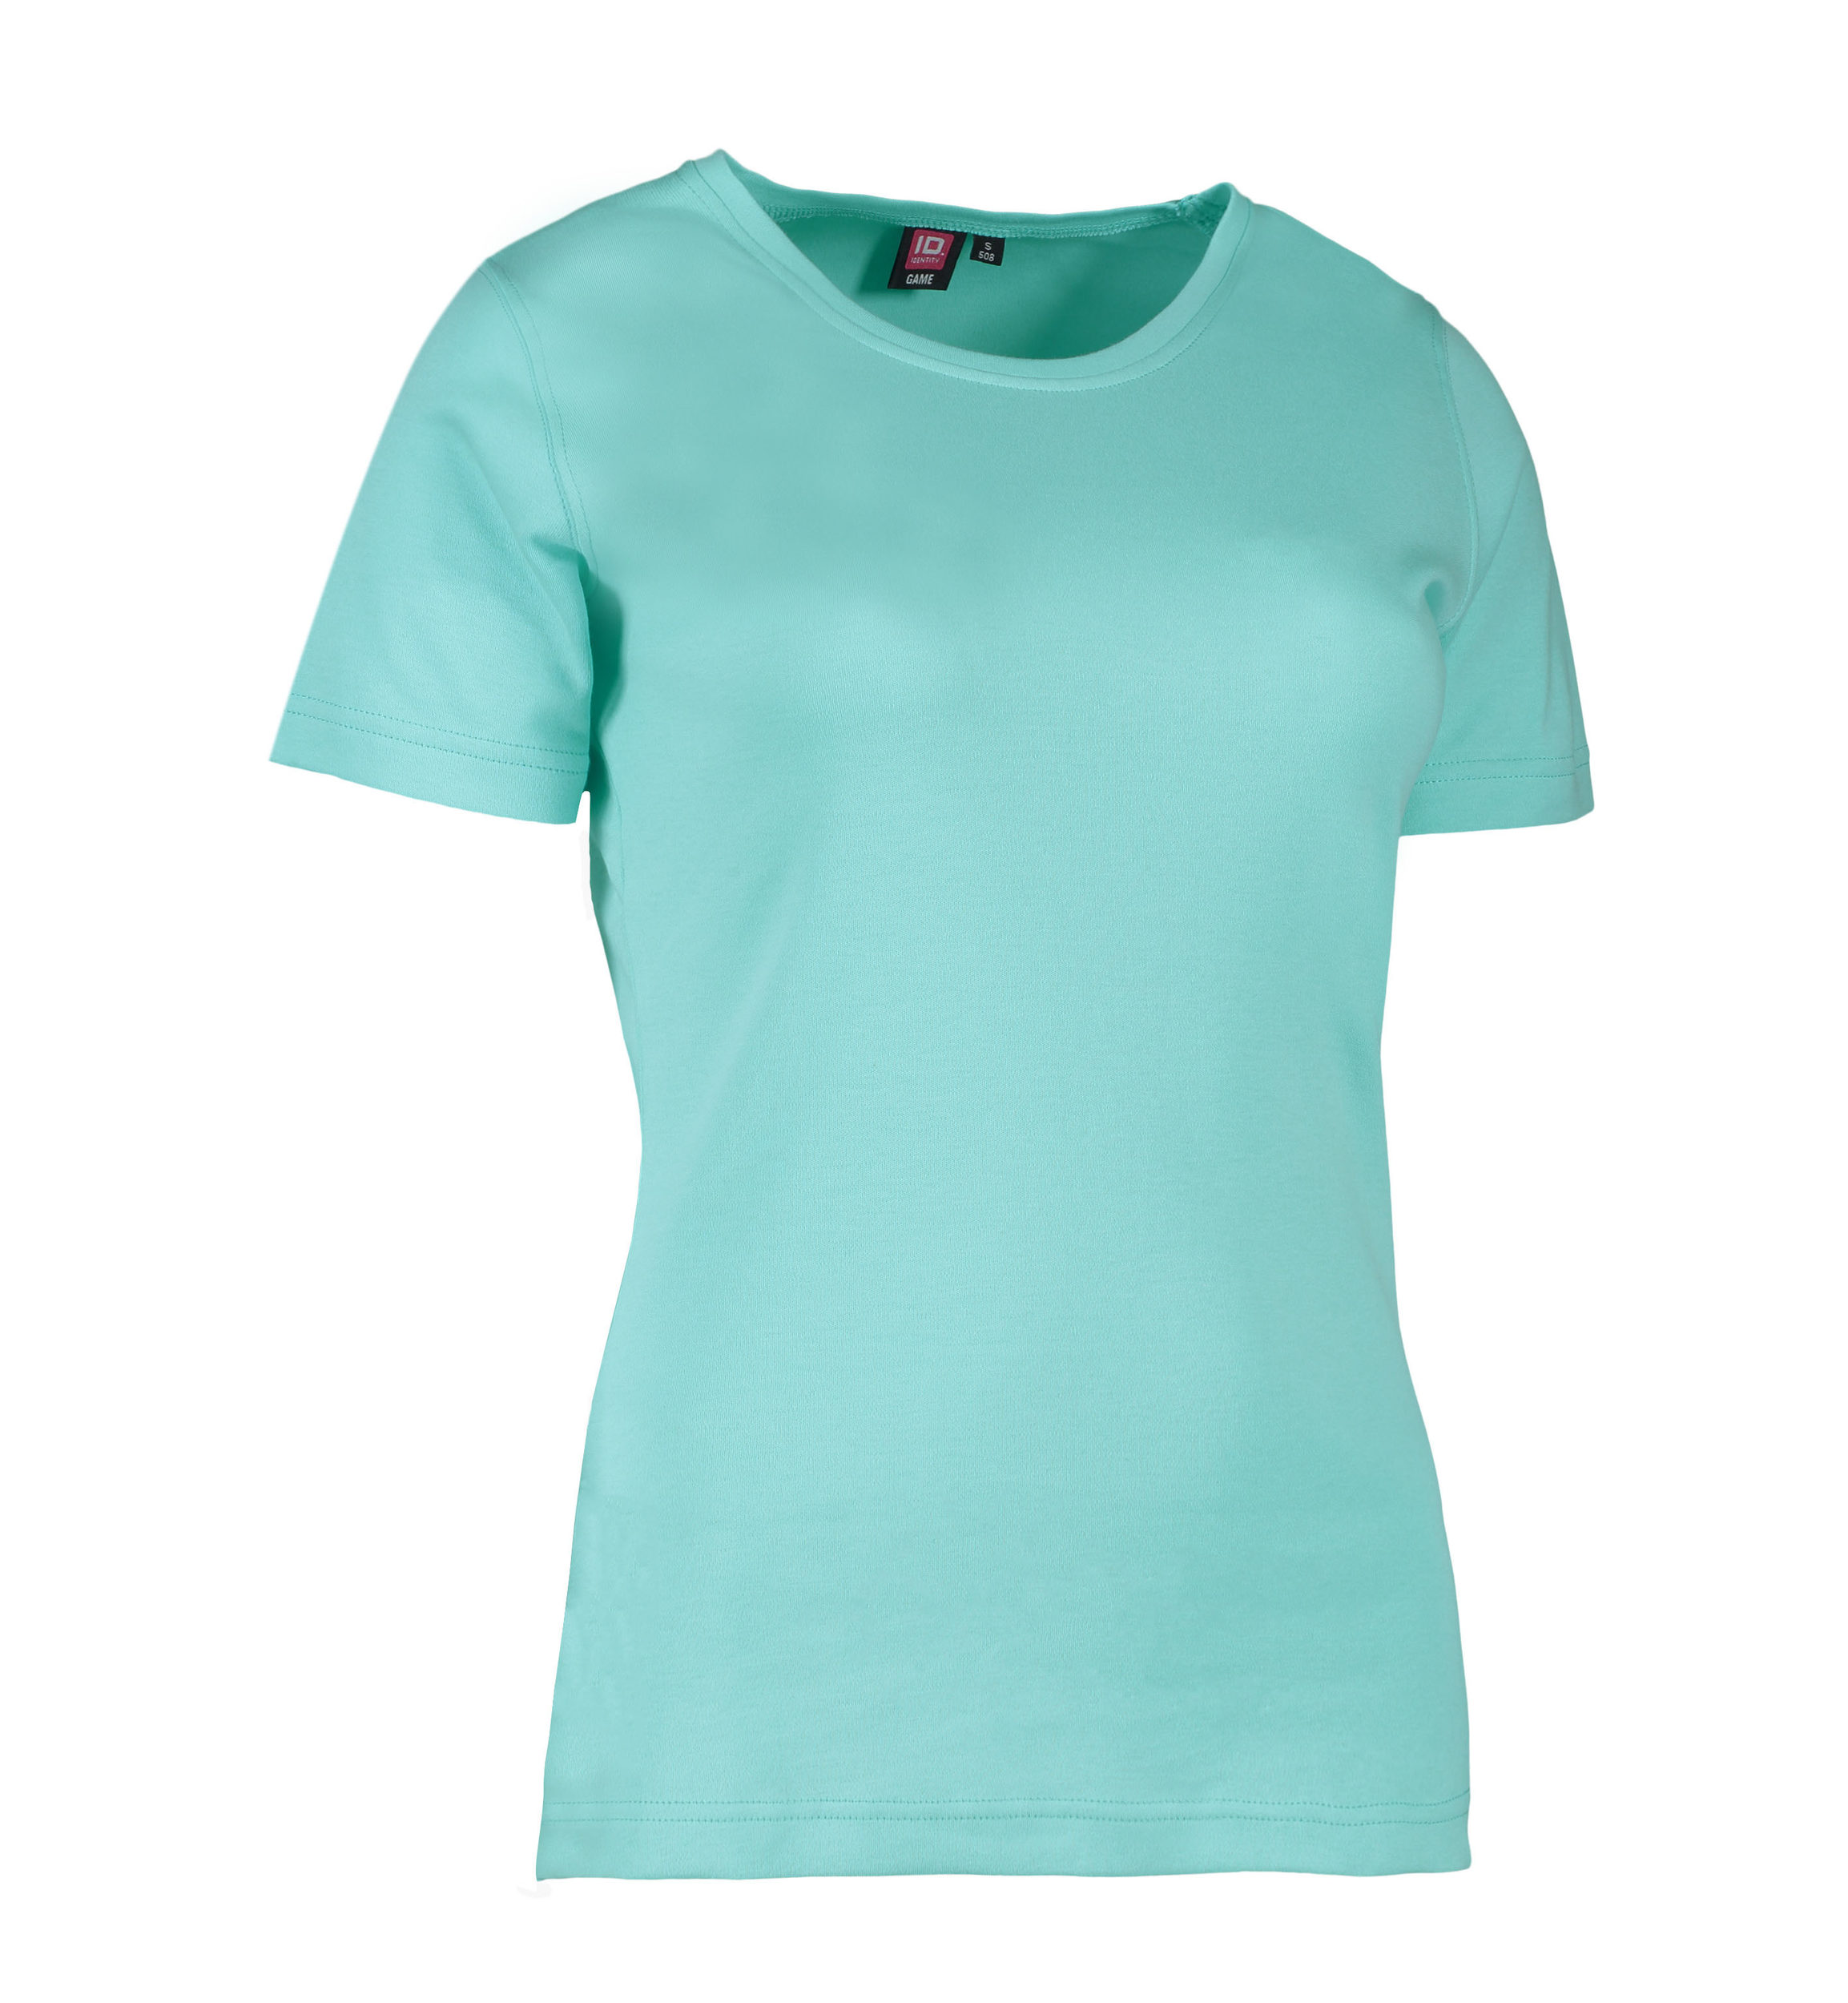 Billede af Mint farvet dame t-shirt med rund hals - L hos Sygeplejebutikken.dk